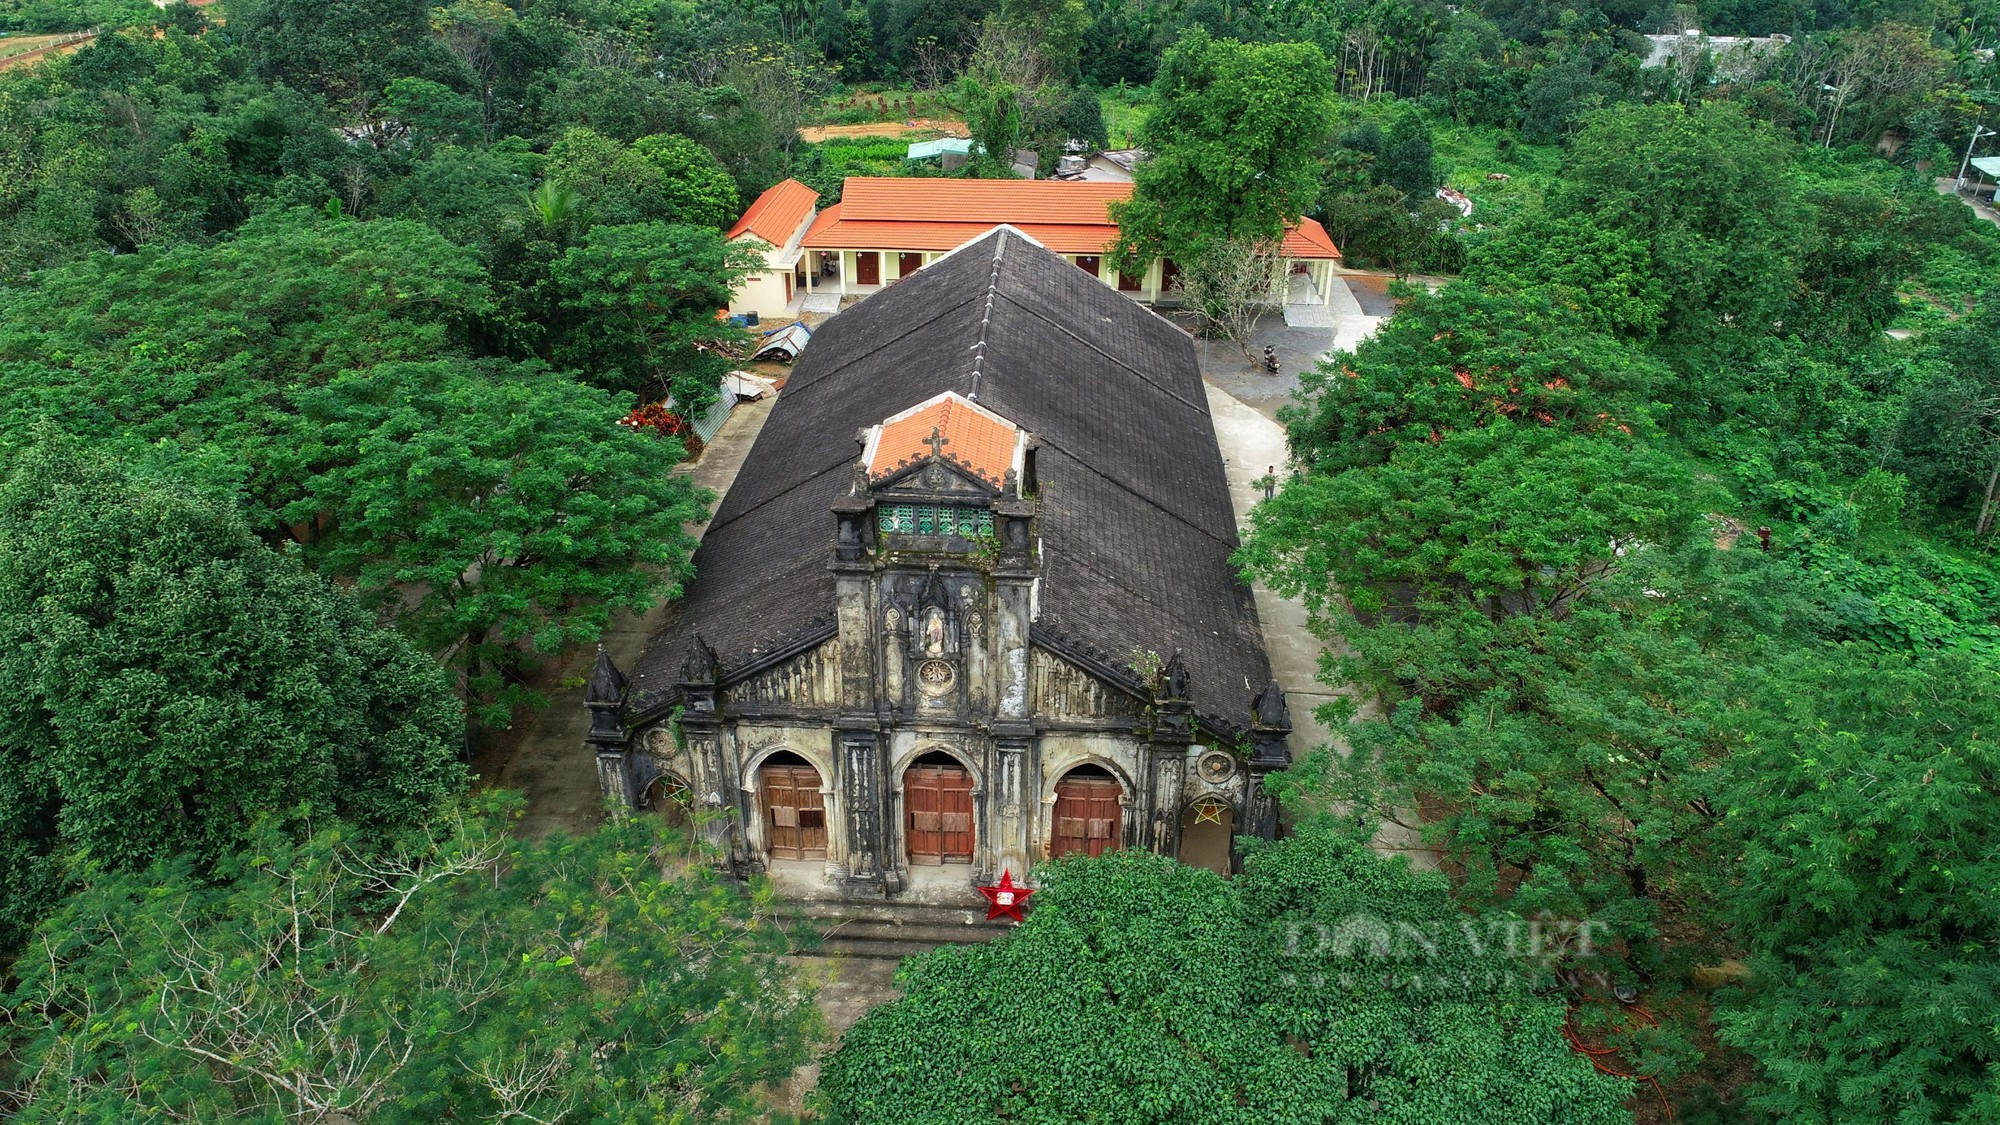 Nét đẹp cổ kính nhà thờ Pháp cổ hơn 100 tuổi tại Đà Nẵng - Ảnh 13.